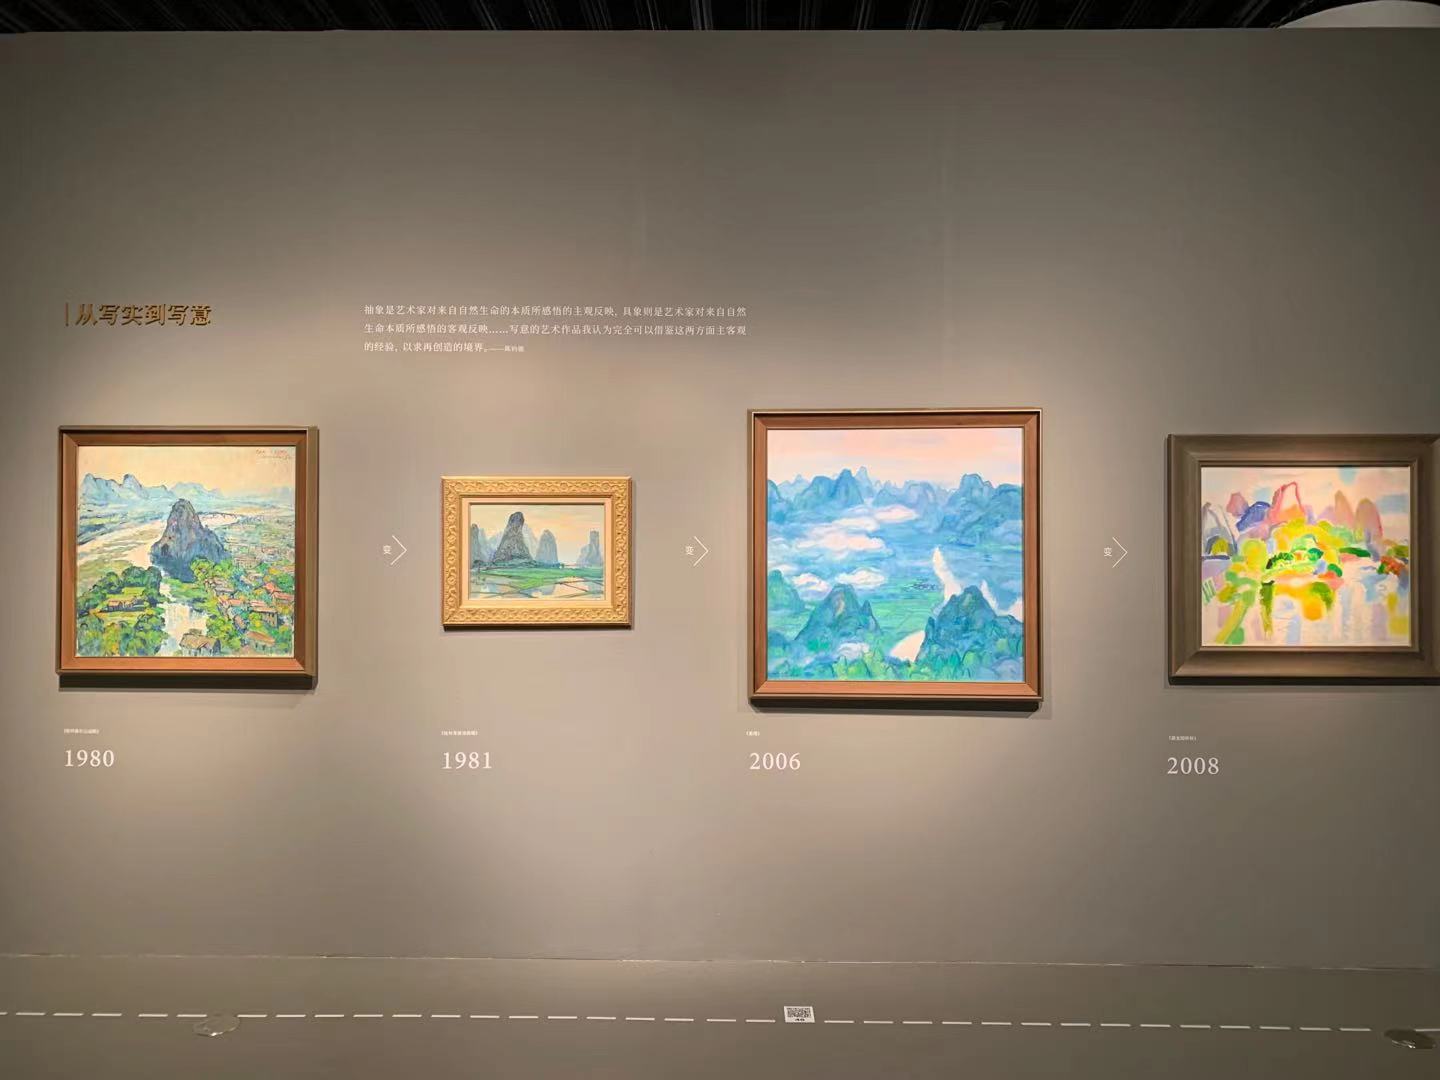 展览显示陈钧德创作各个年龄段的变化。